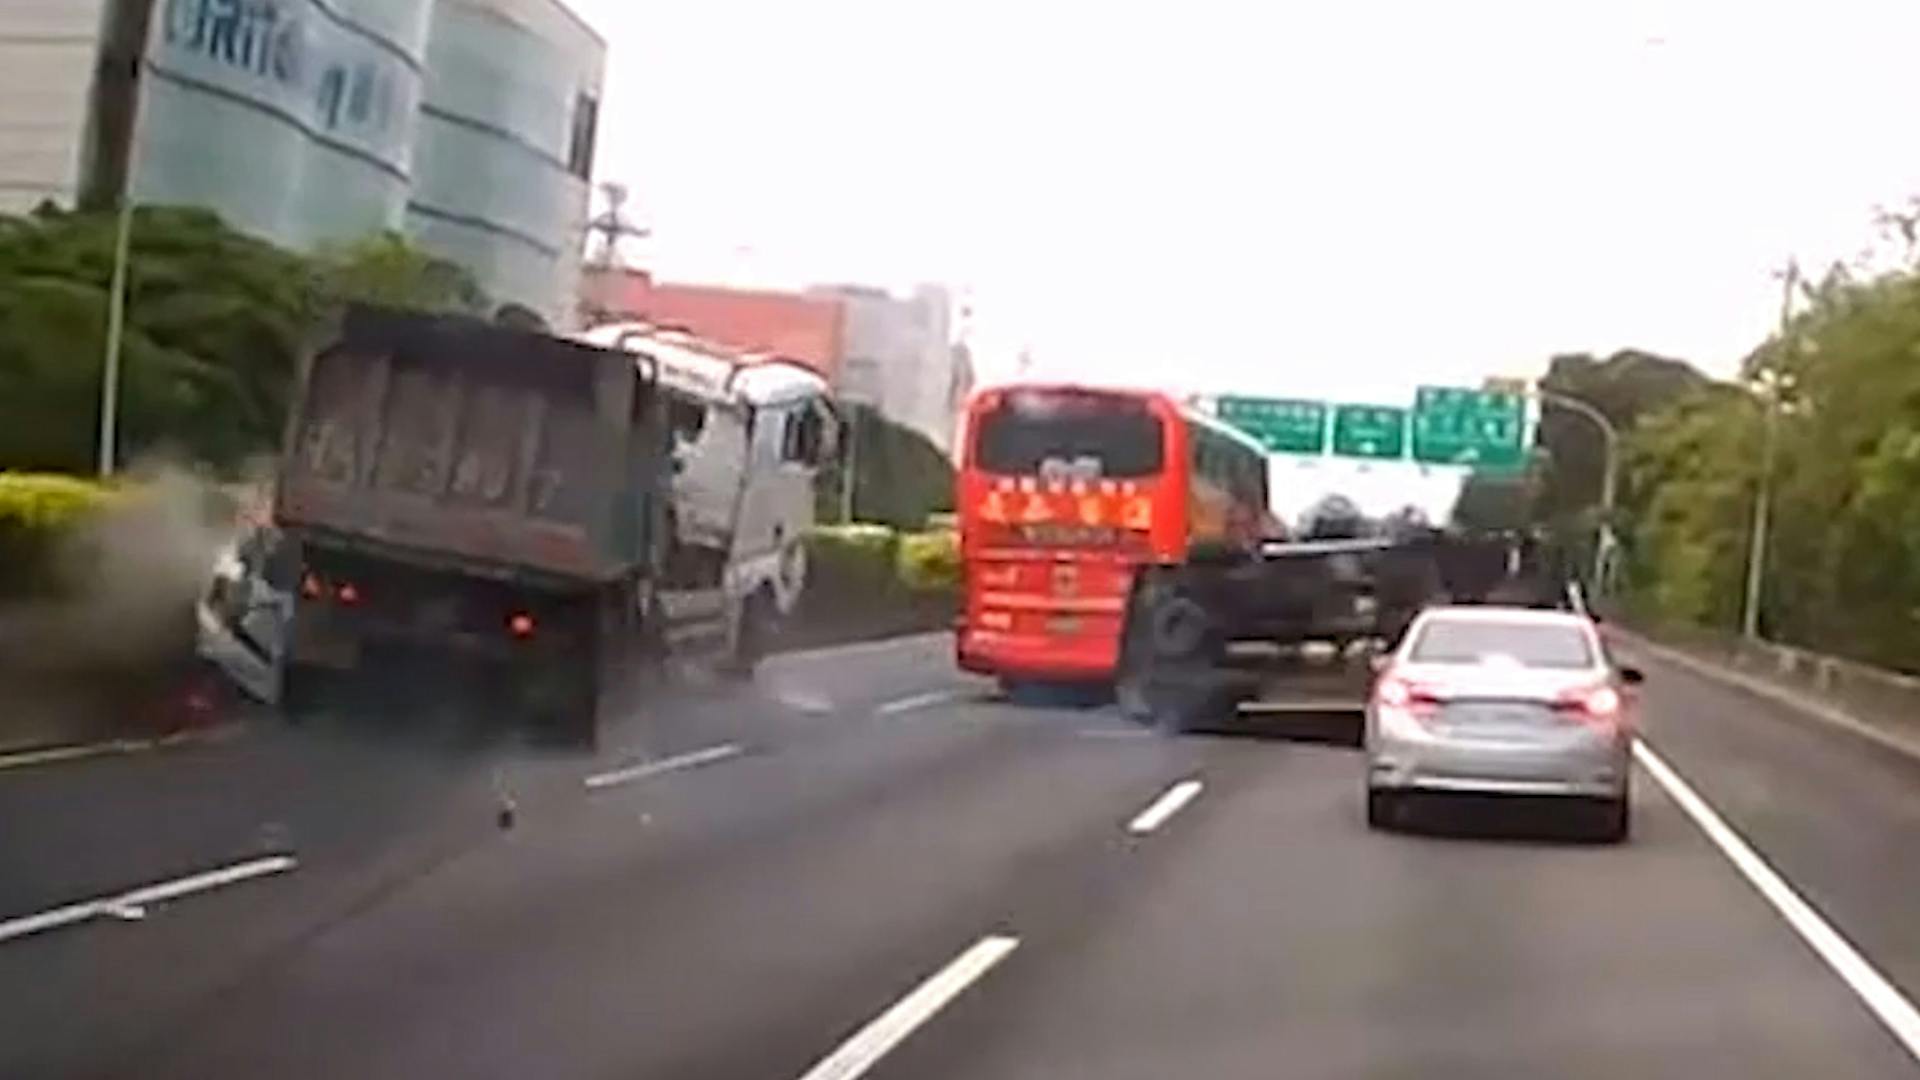 Dashcam filmt hoe vrachtwagen meerdere autos ramt in Taiwan